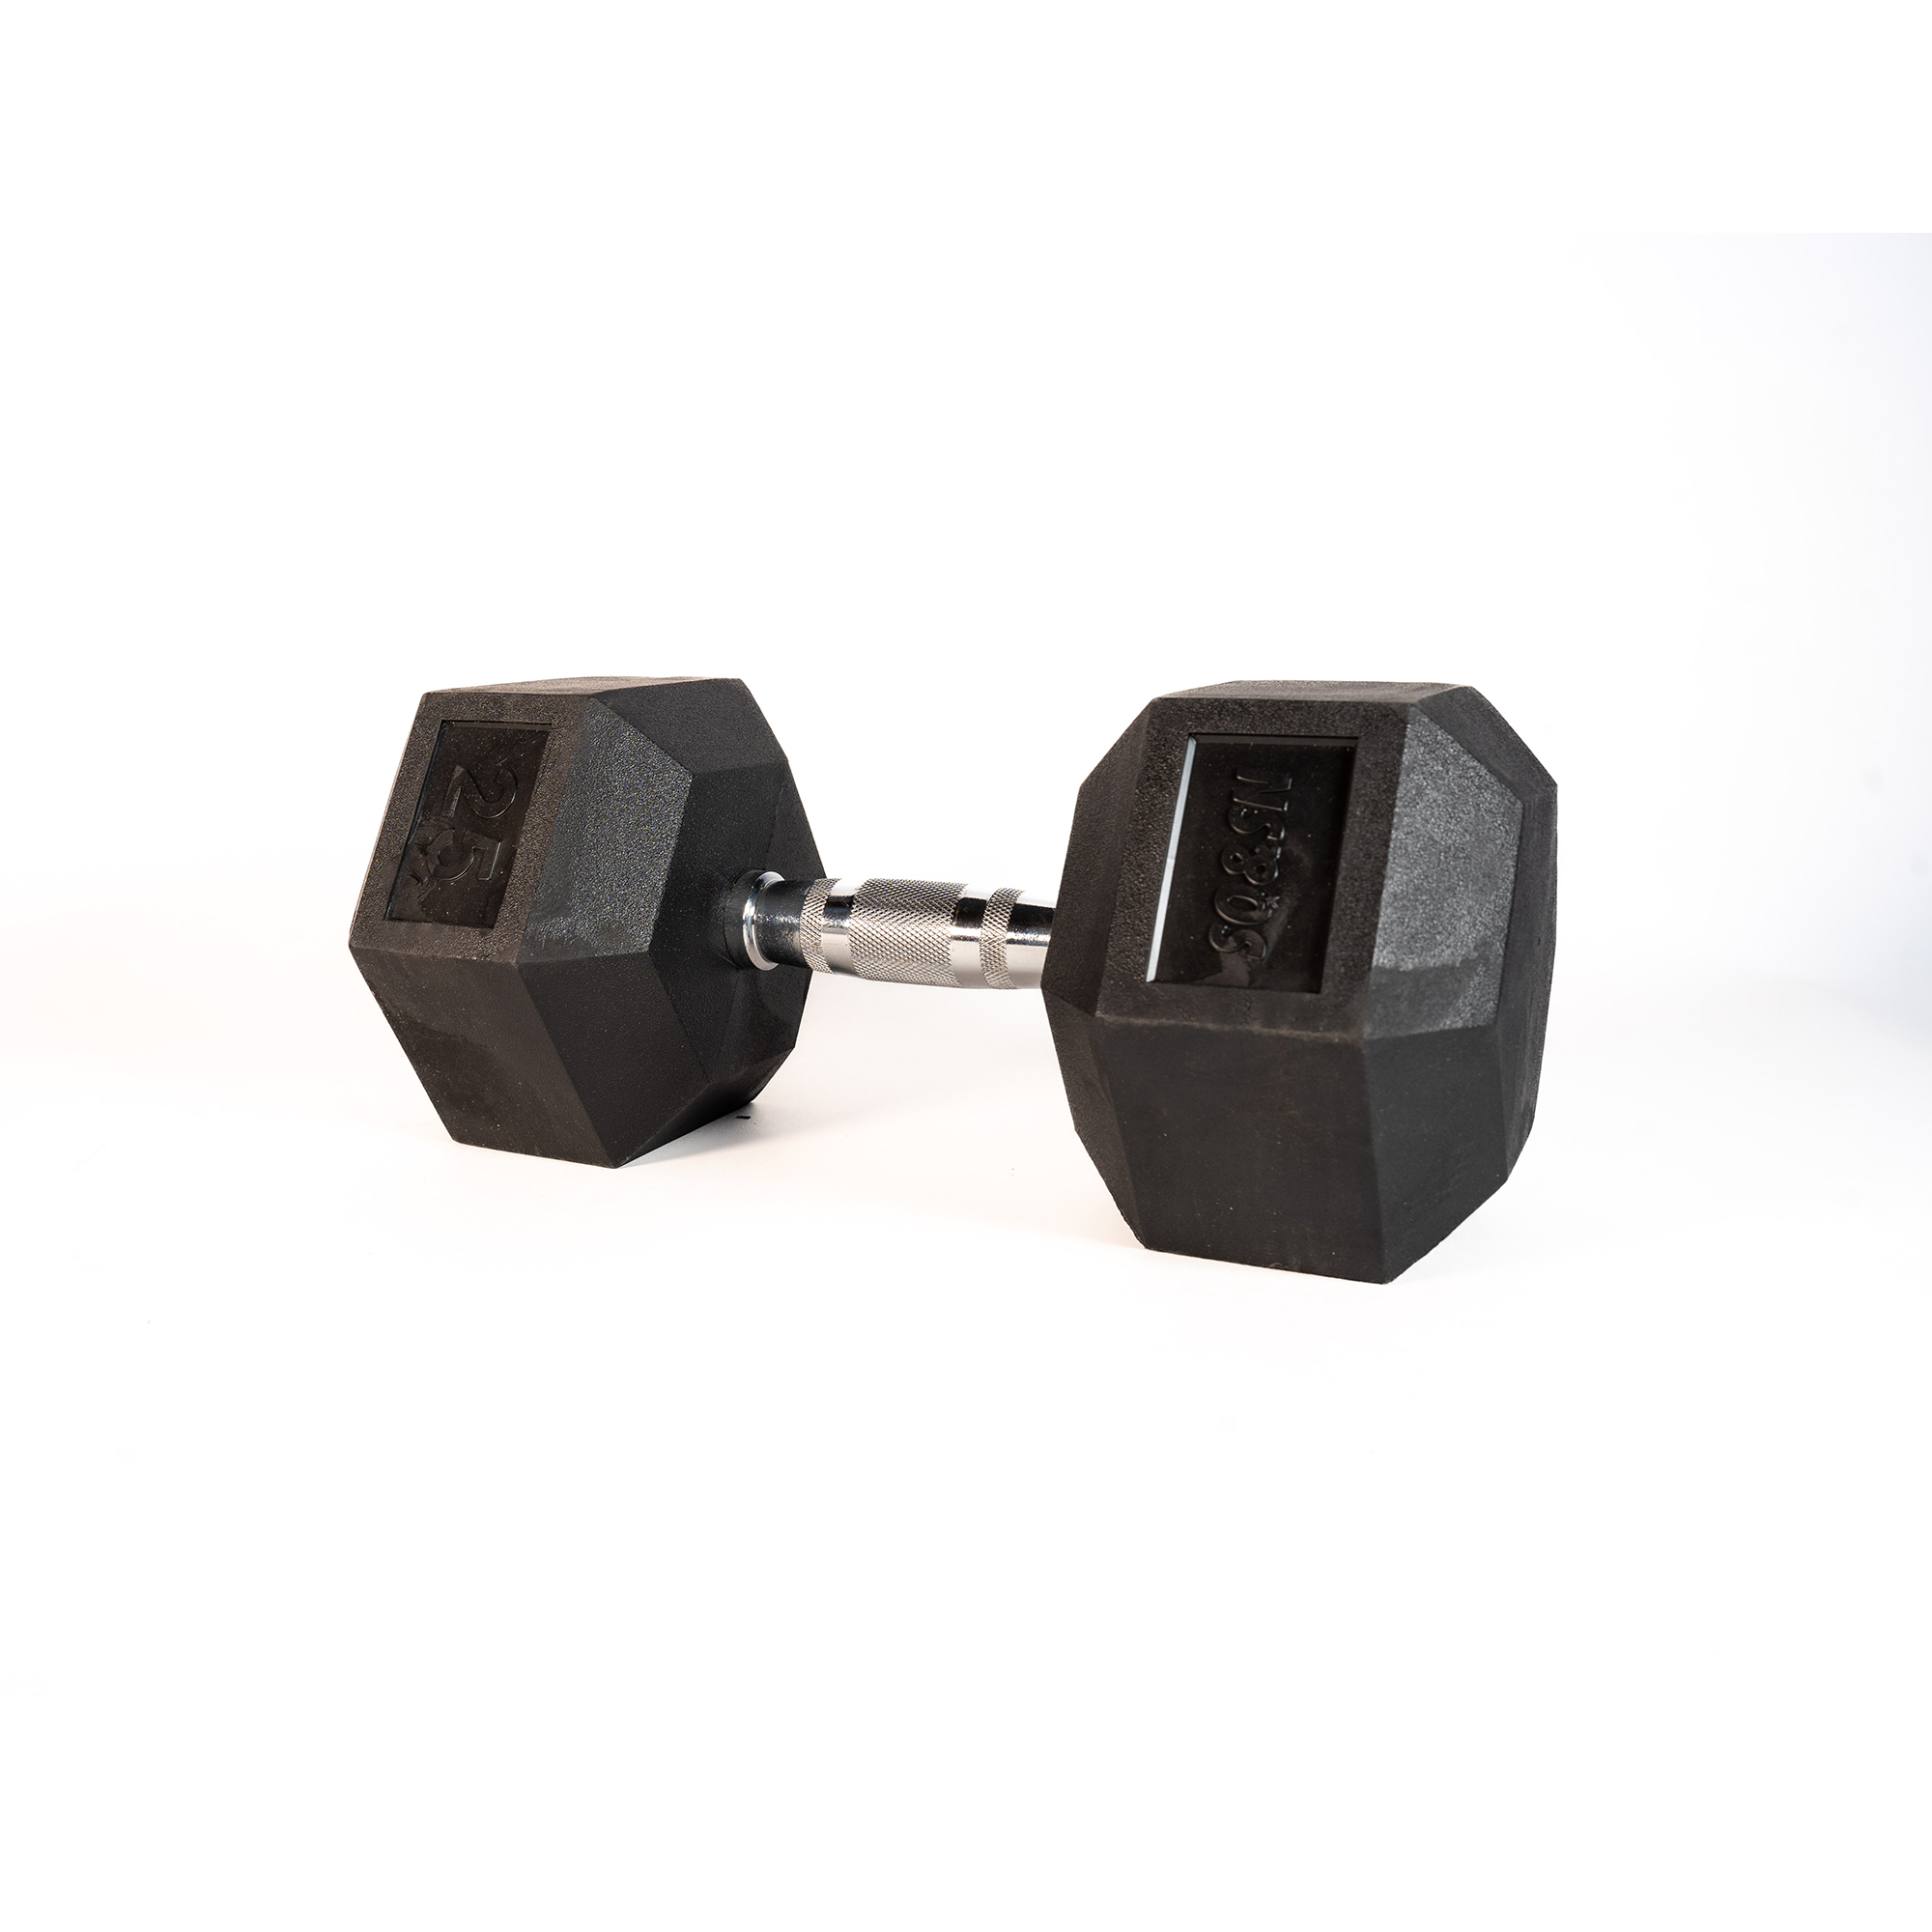 SQ&SN Hexagon Håndvægt (25 kg) med forkromet greb. Udstyr til crossfit træning, styrketræning og funktionel træning thumbnail